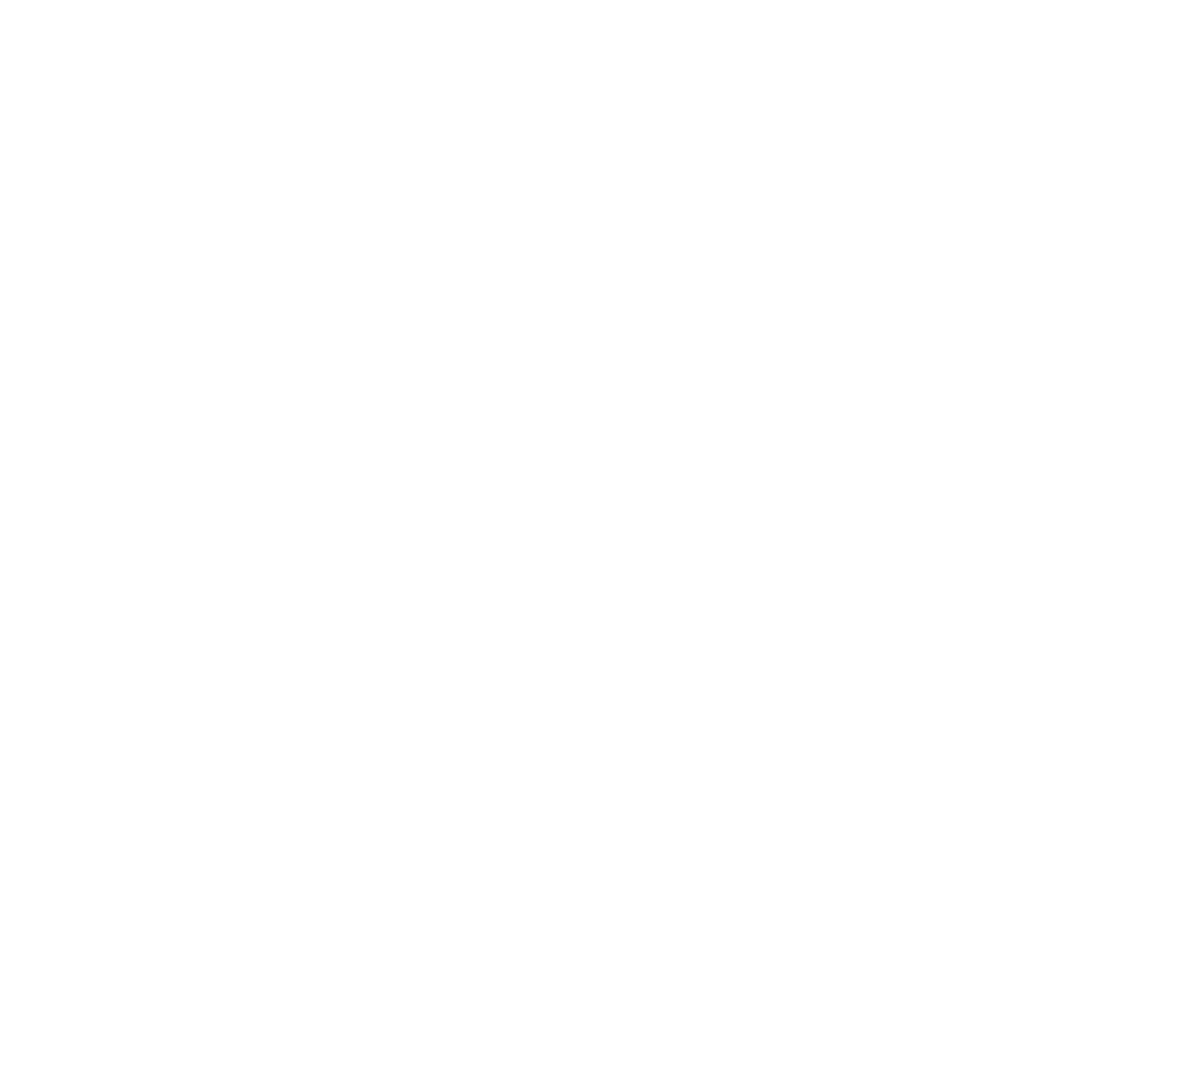 Кондитерская Яхонт г. Иркутск. Корзинка из песочного теста запечённая с творожной начинкой и оформлена желе с брусникой.